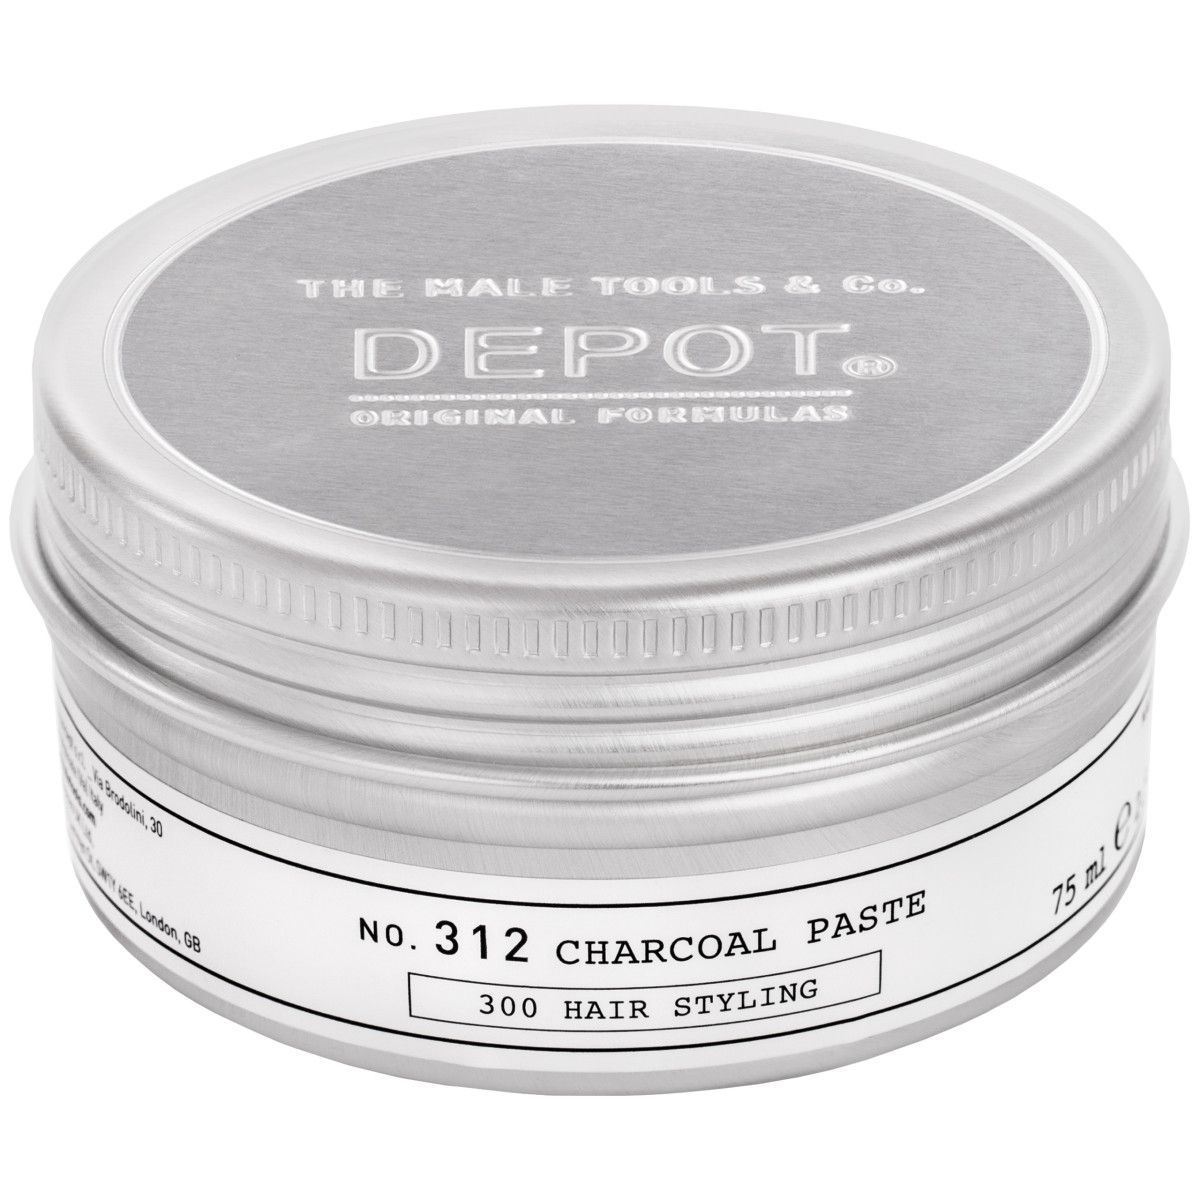 Depot No. 312 Charcoal Paste - plastyczna pasta z węglem drzewnym do stylizacji włosów, 75ml